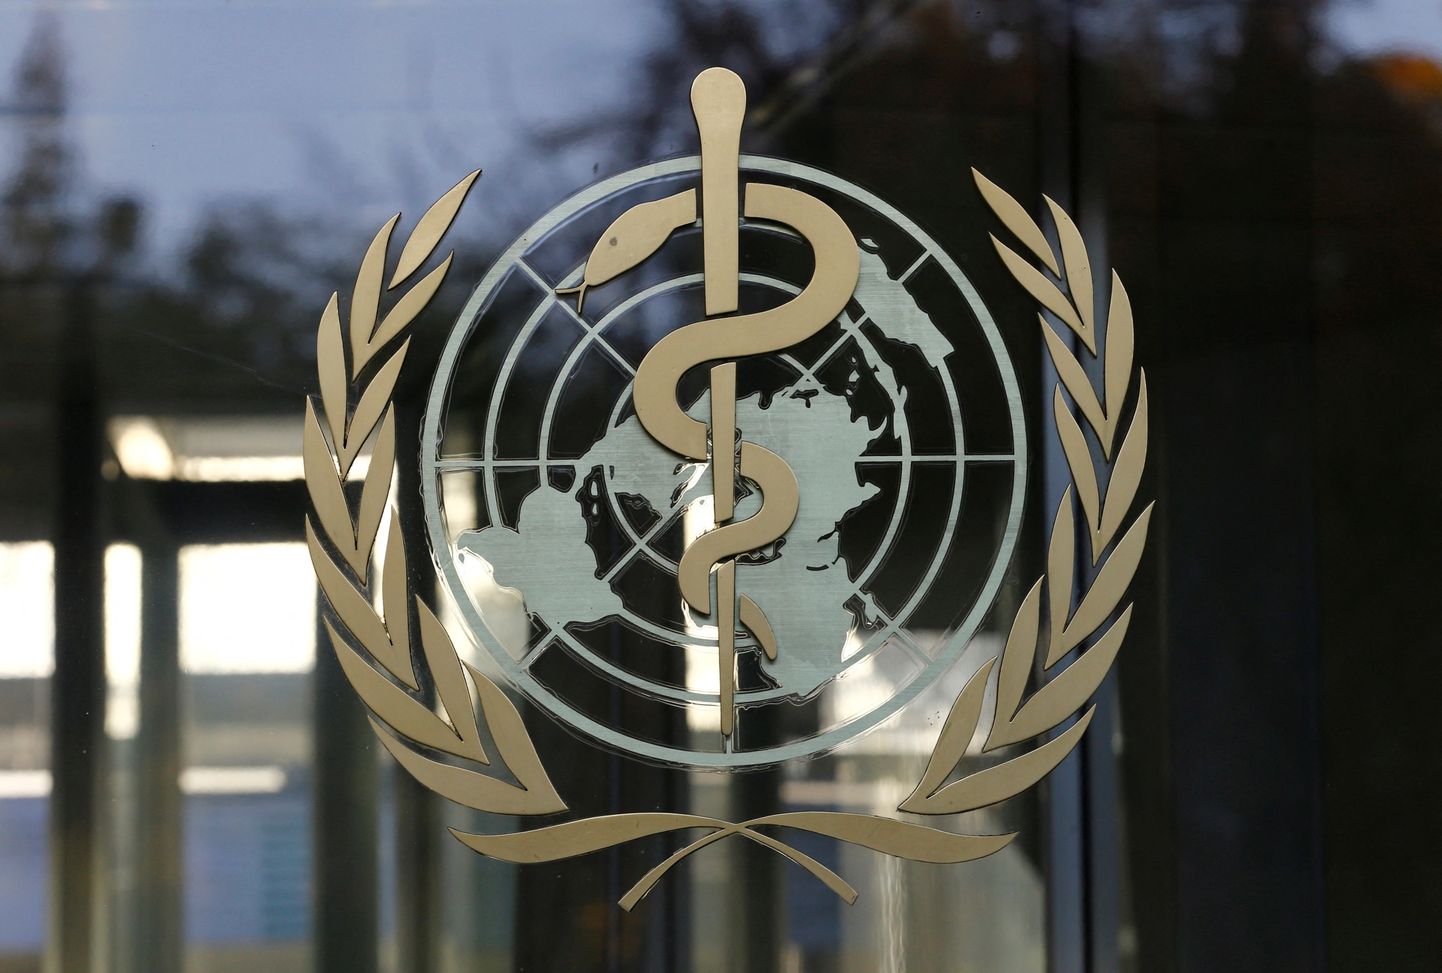 Maailma Terviseorganisatsiooni (WHO) logo.